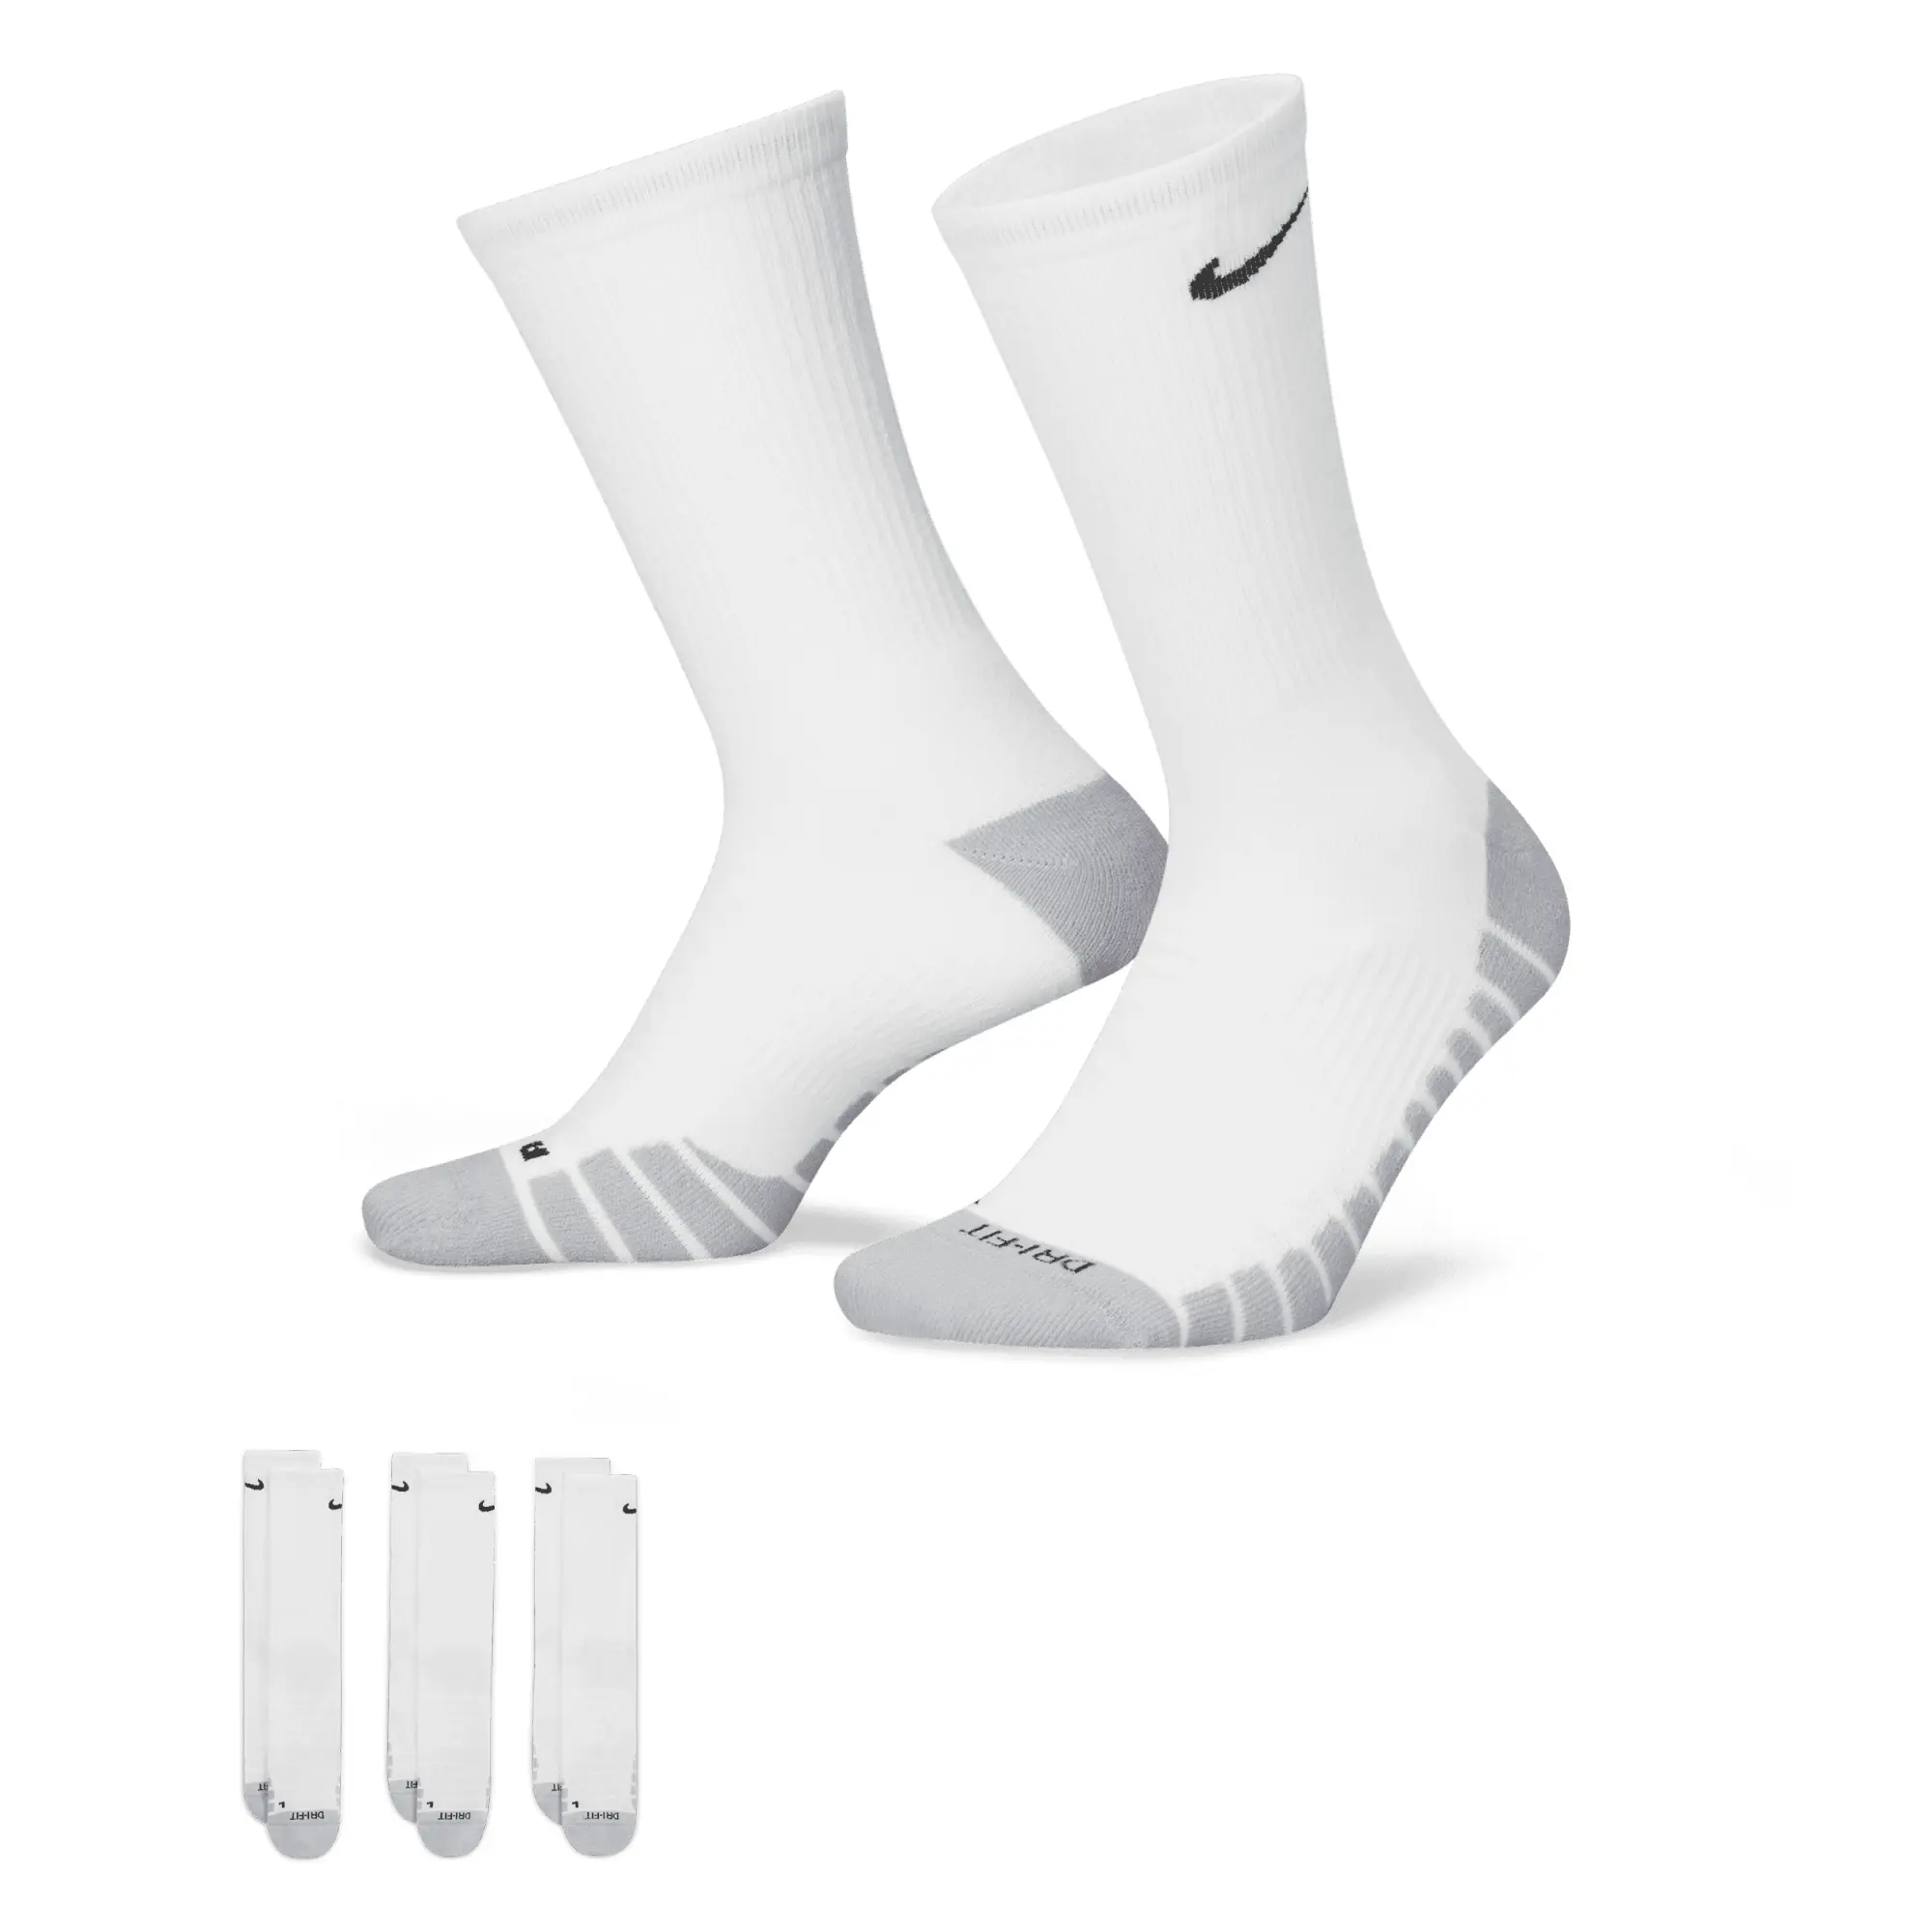 Nike Dry Cushion Crew Sports Socks 3 Pack - White, Black